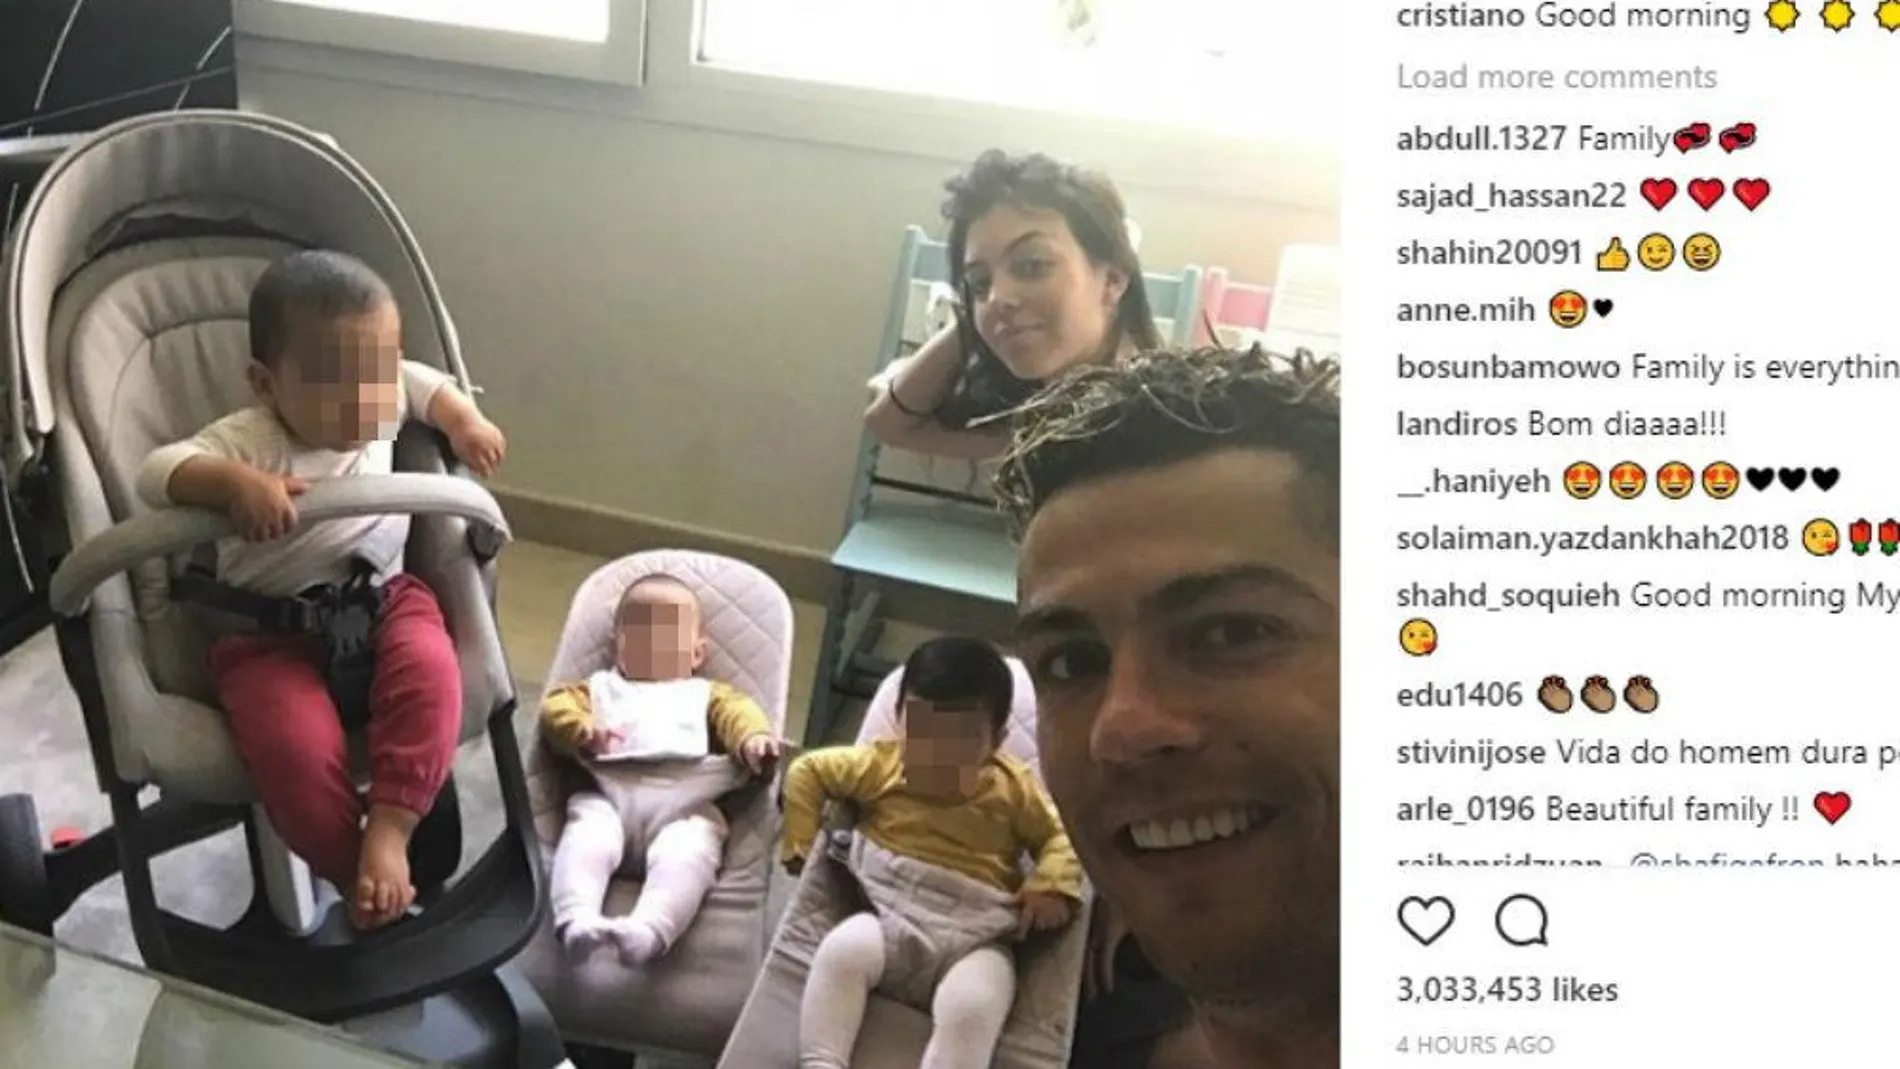 Los niños de Cristiano Ronaldo crecen a pasos agigantados